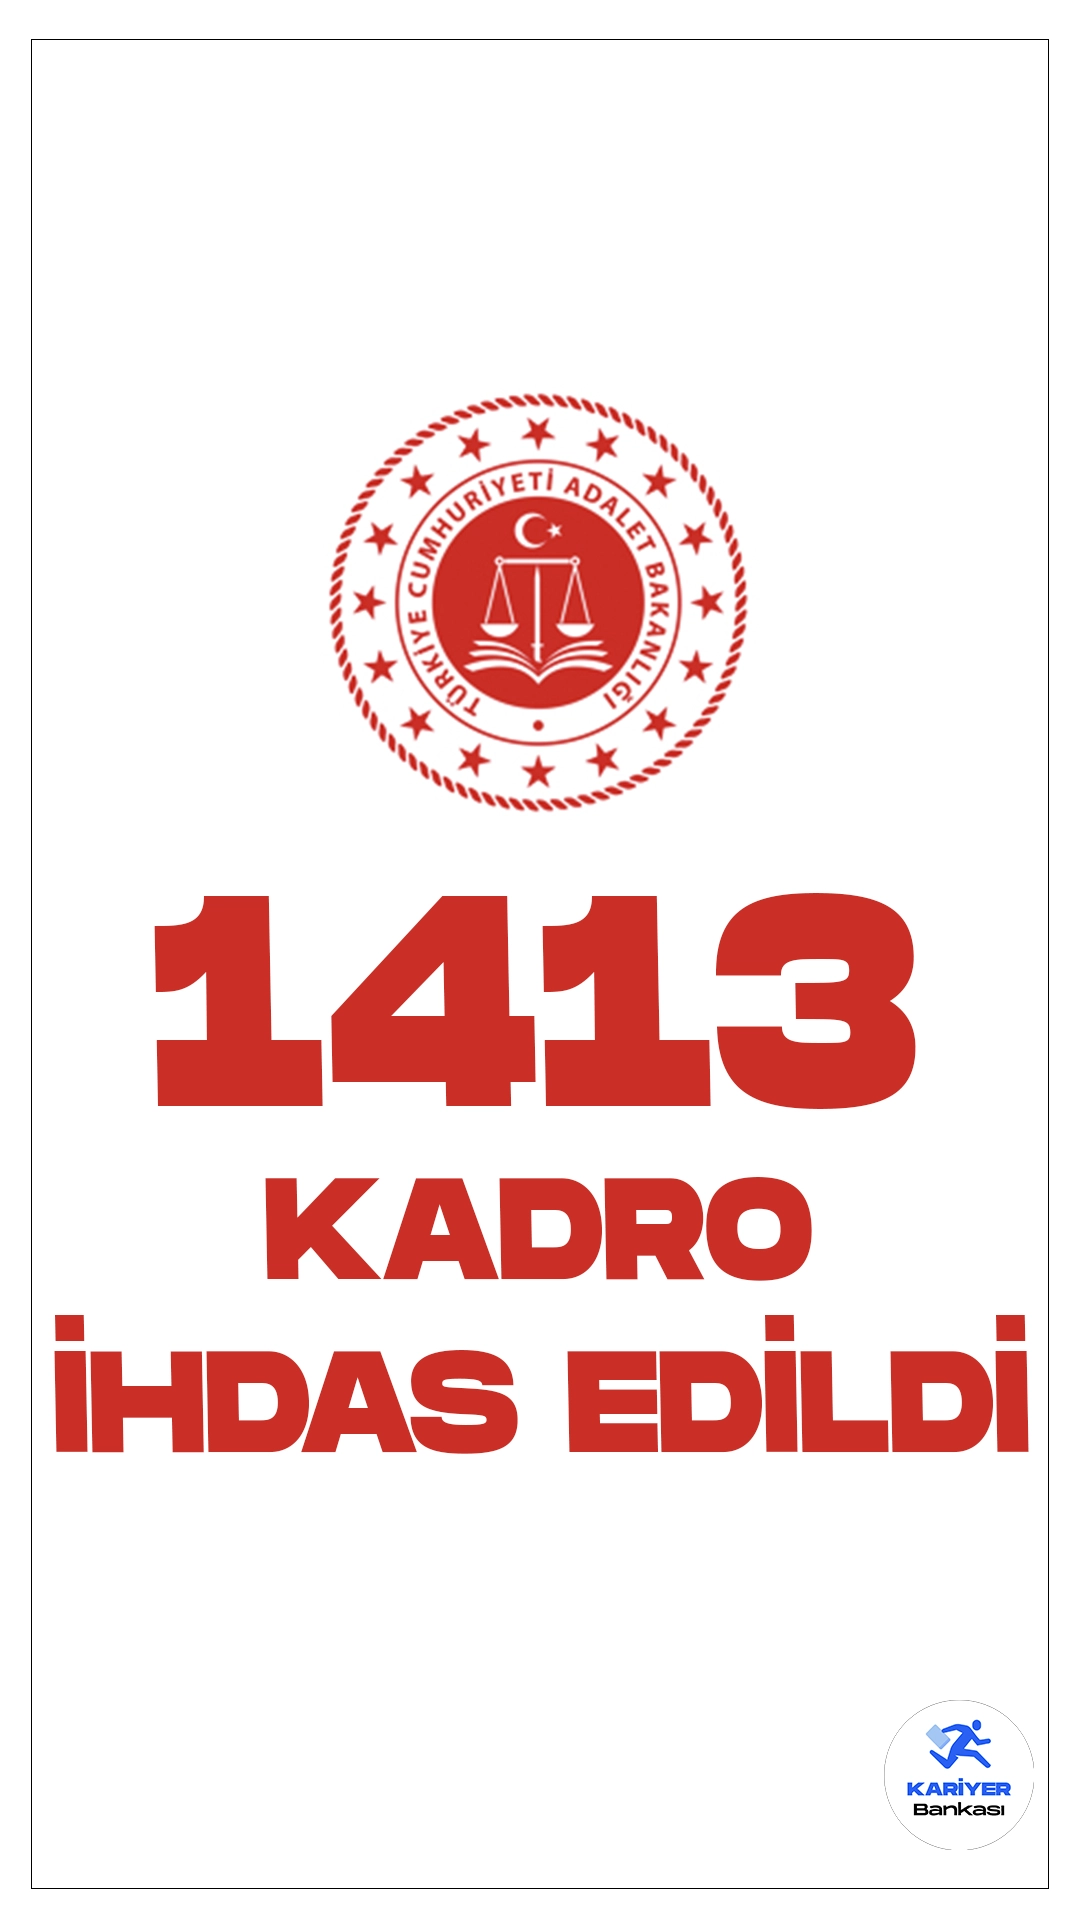 Adalet Bakanlığına 1413 Kadro İhdas Edildi. 26 Aralık 2023 tarihli Resmi Gazete'de yayımlana duyuruda, Cumhurbaşkanı Recep Tayyip Erdoğan’ın onayıyla Adalet Bakanlığı 1413 boş kadro ihdas edildi.